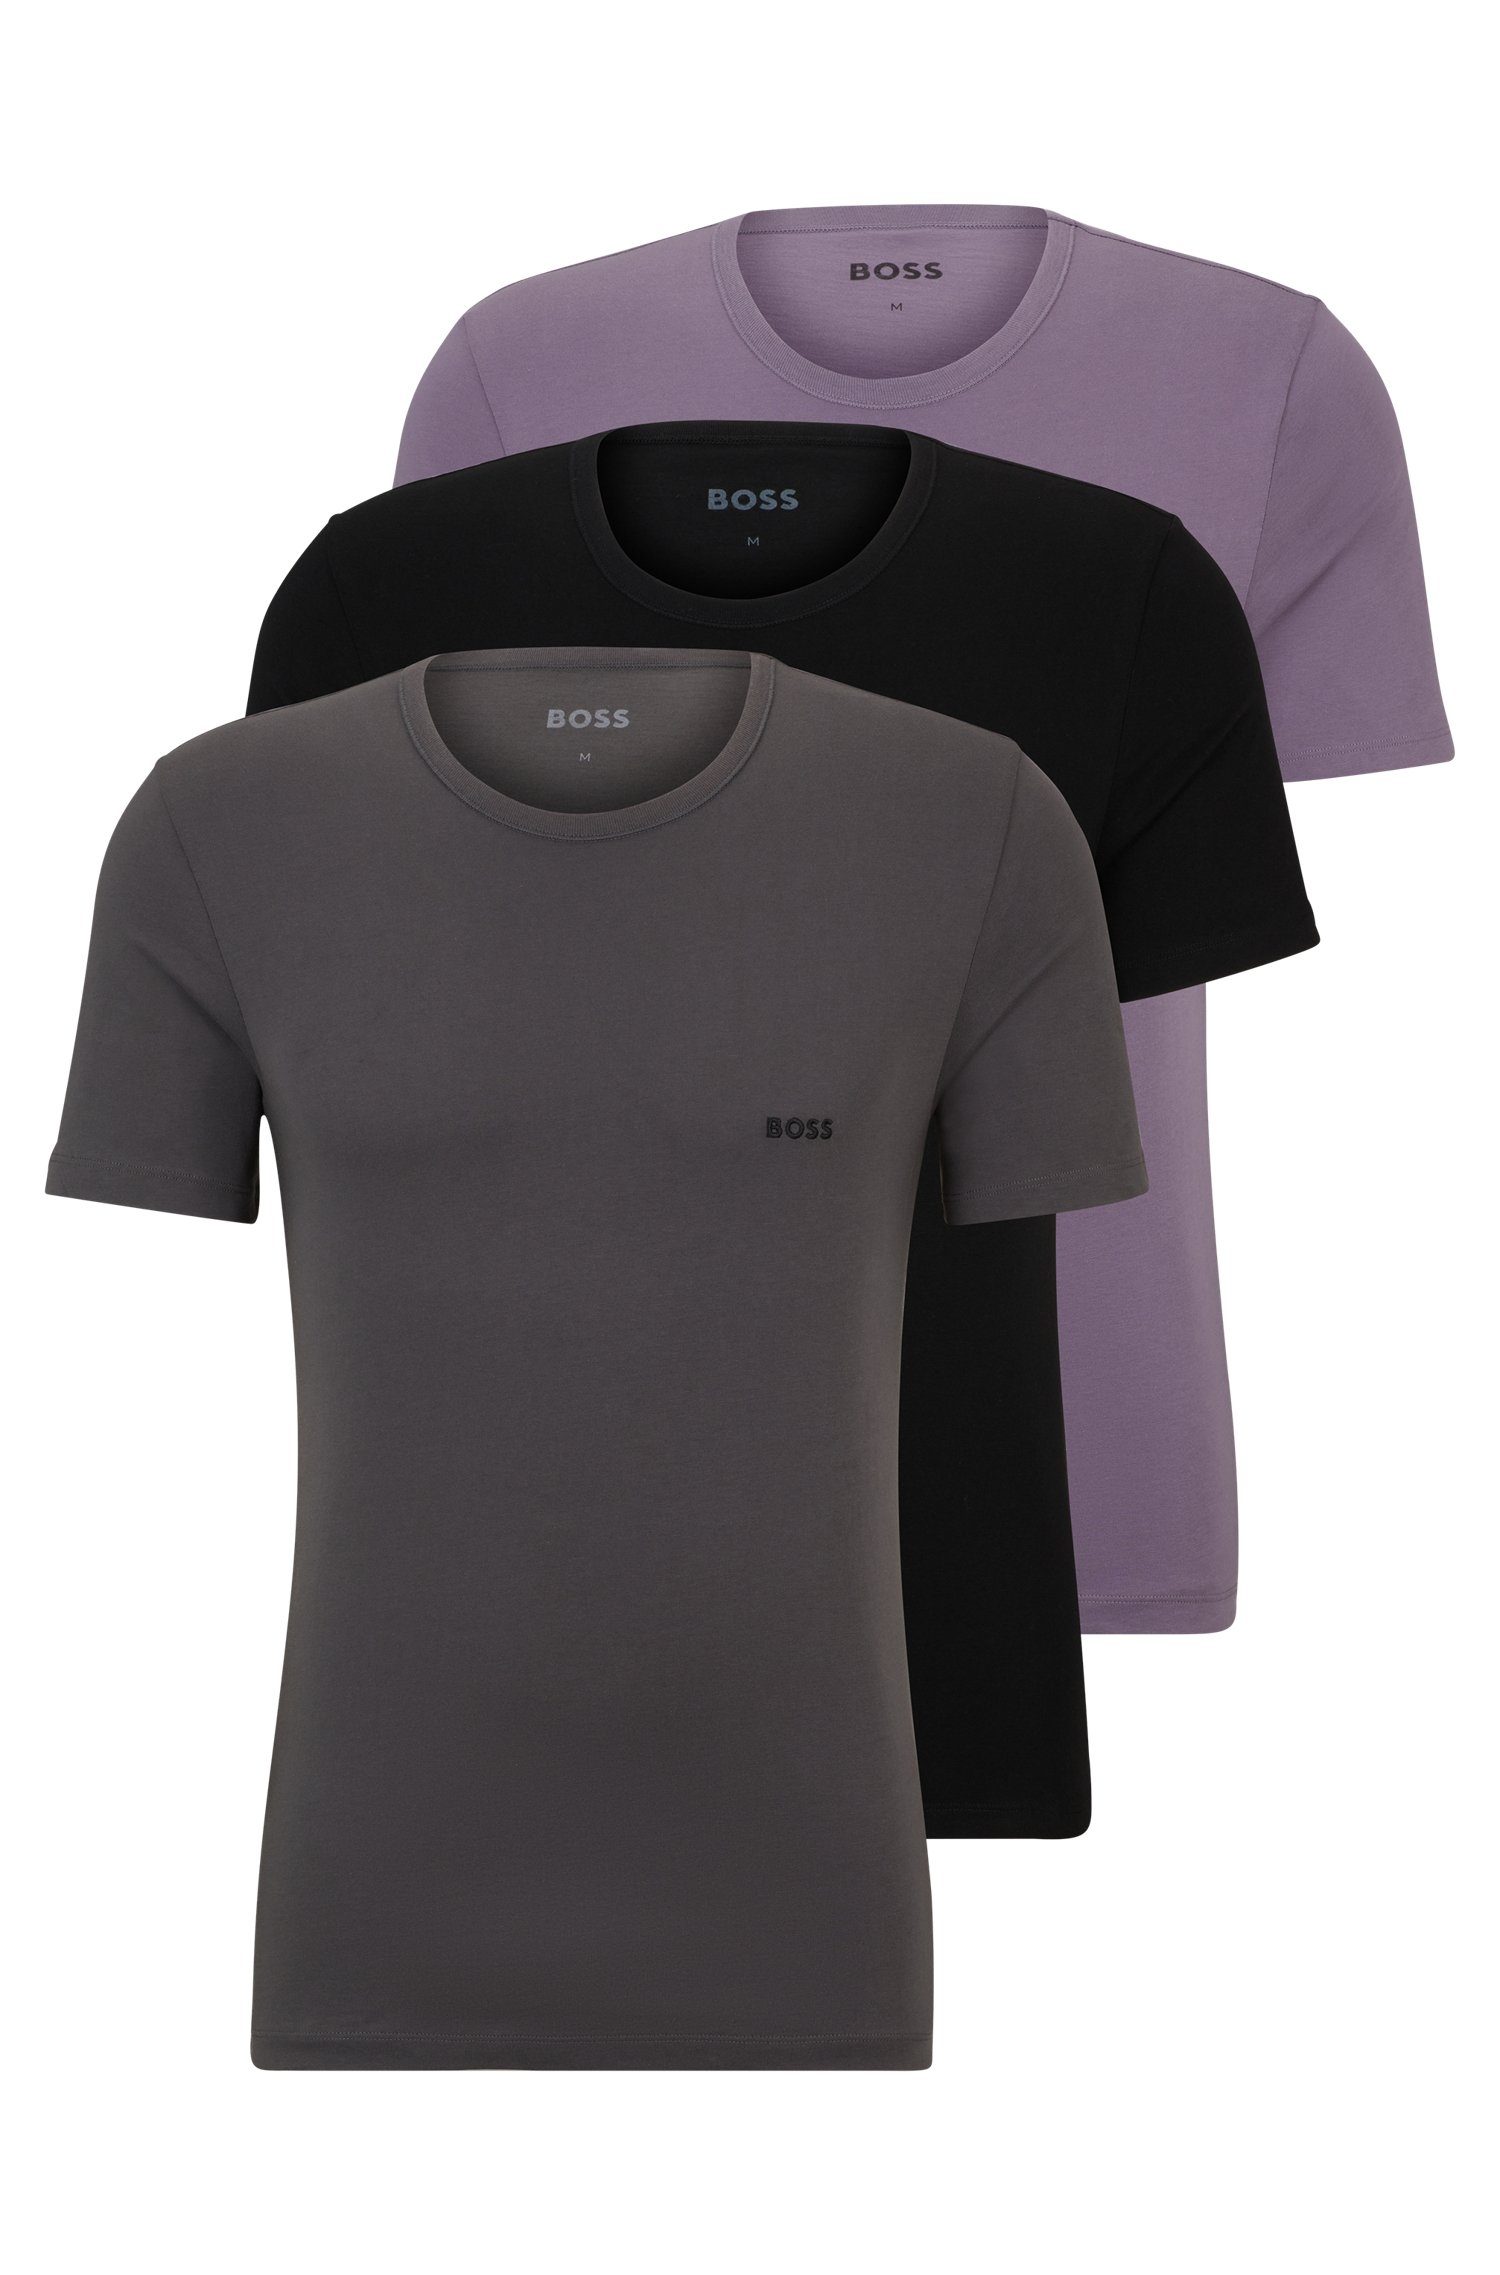 BOSS T-Shirt (Set, 3-tlg) mit BOSS Schriftzug auf der Brust schwarz/braun/lila981